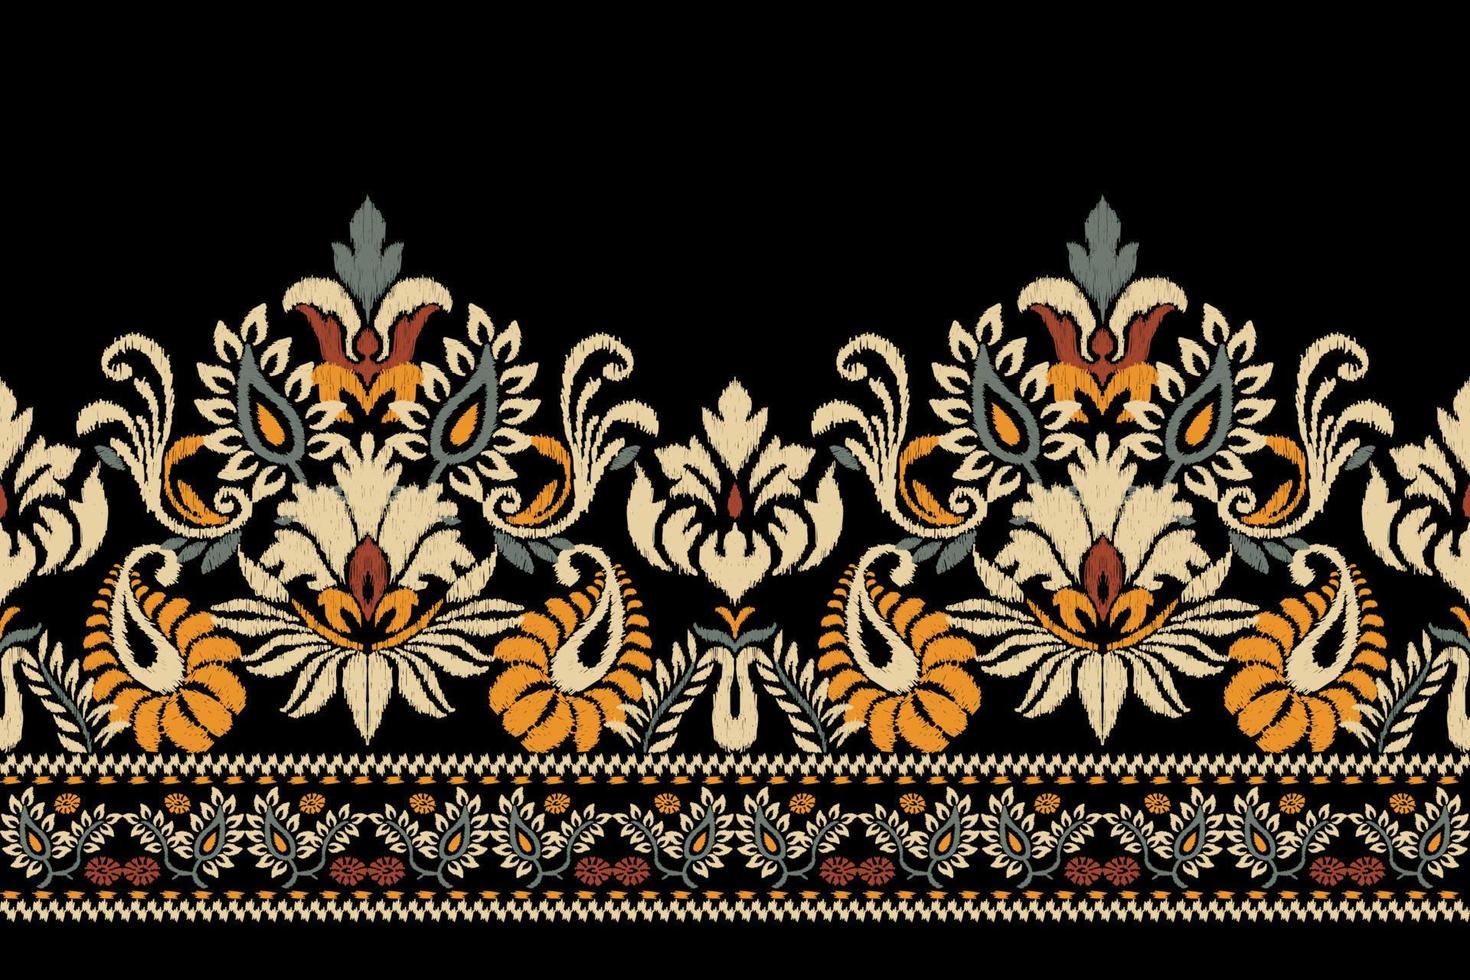 ikat floral paisley broderie sur foncé bleu arrière-plan.géométrique ethnique Oriental modèle traditionnel.aztèque style abstrait vecteur illustration.design pour texture, tissu, vêtements, emballage, écharpe, paréo.